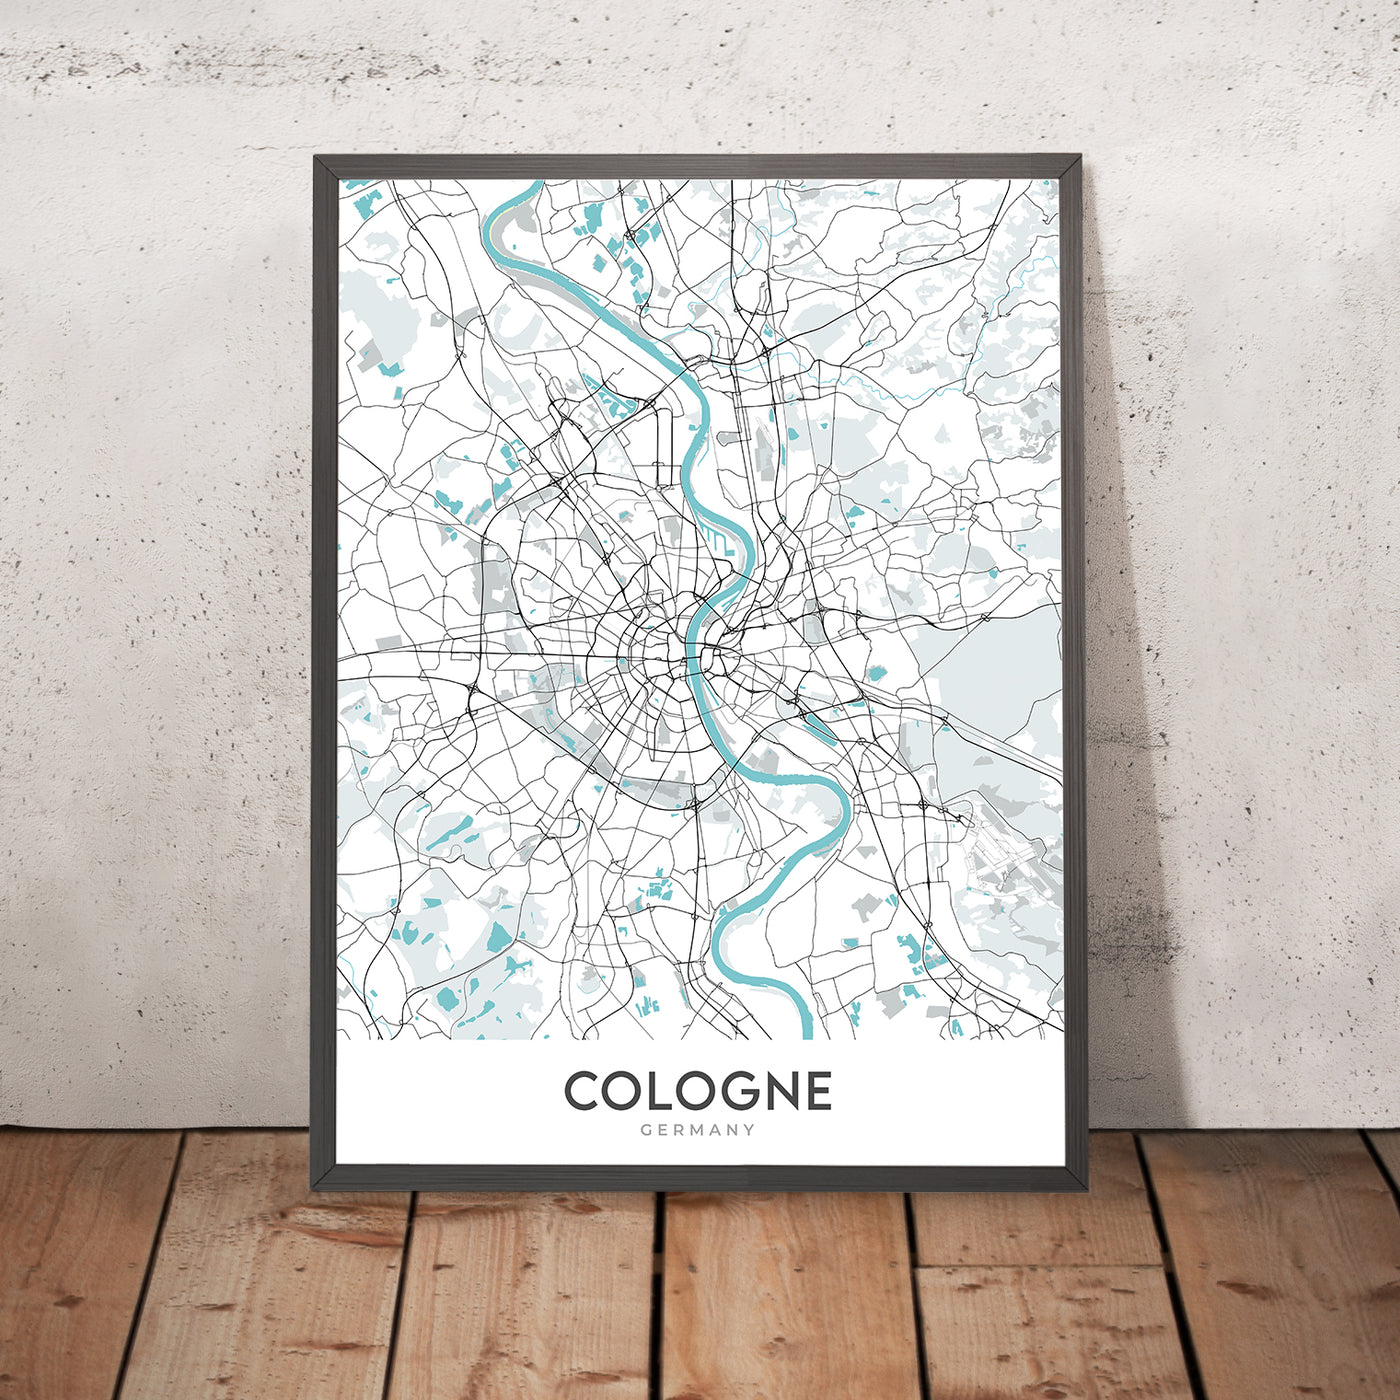 Mapa moderno de la ciudad de Colonia, Alemania: catedral, triángulo, ópera, museo, zoológico